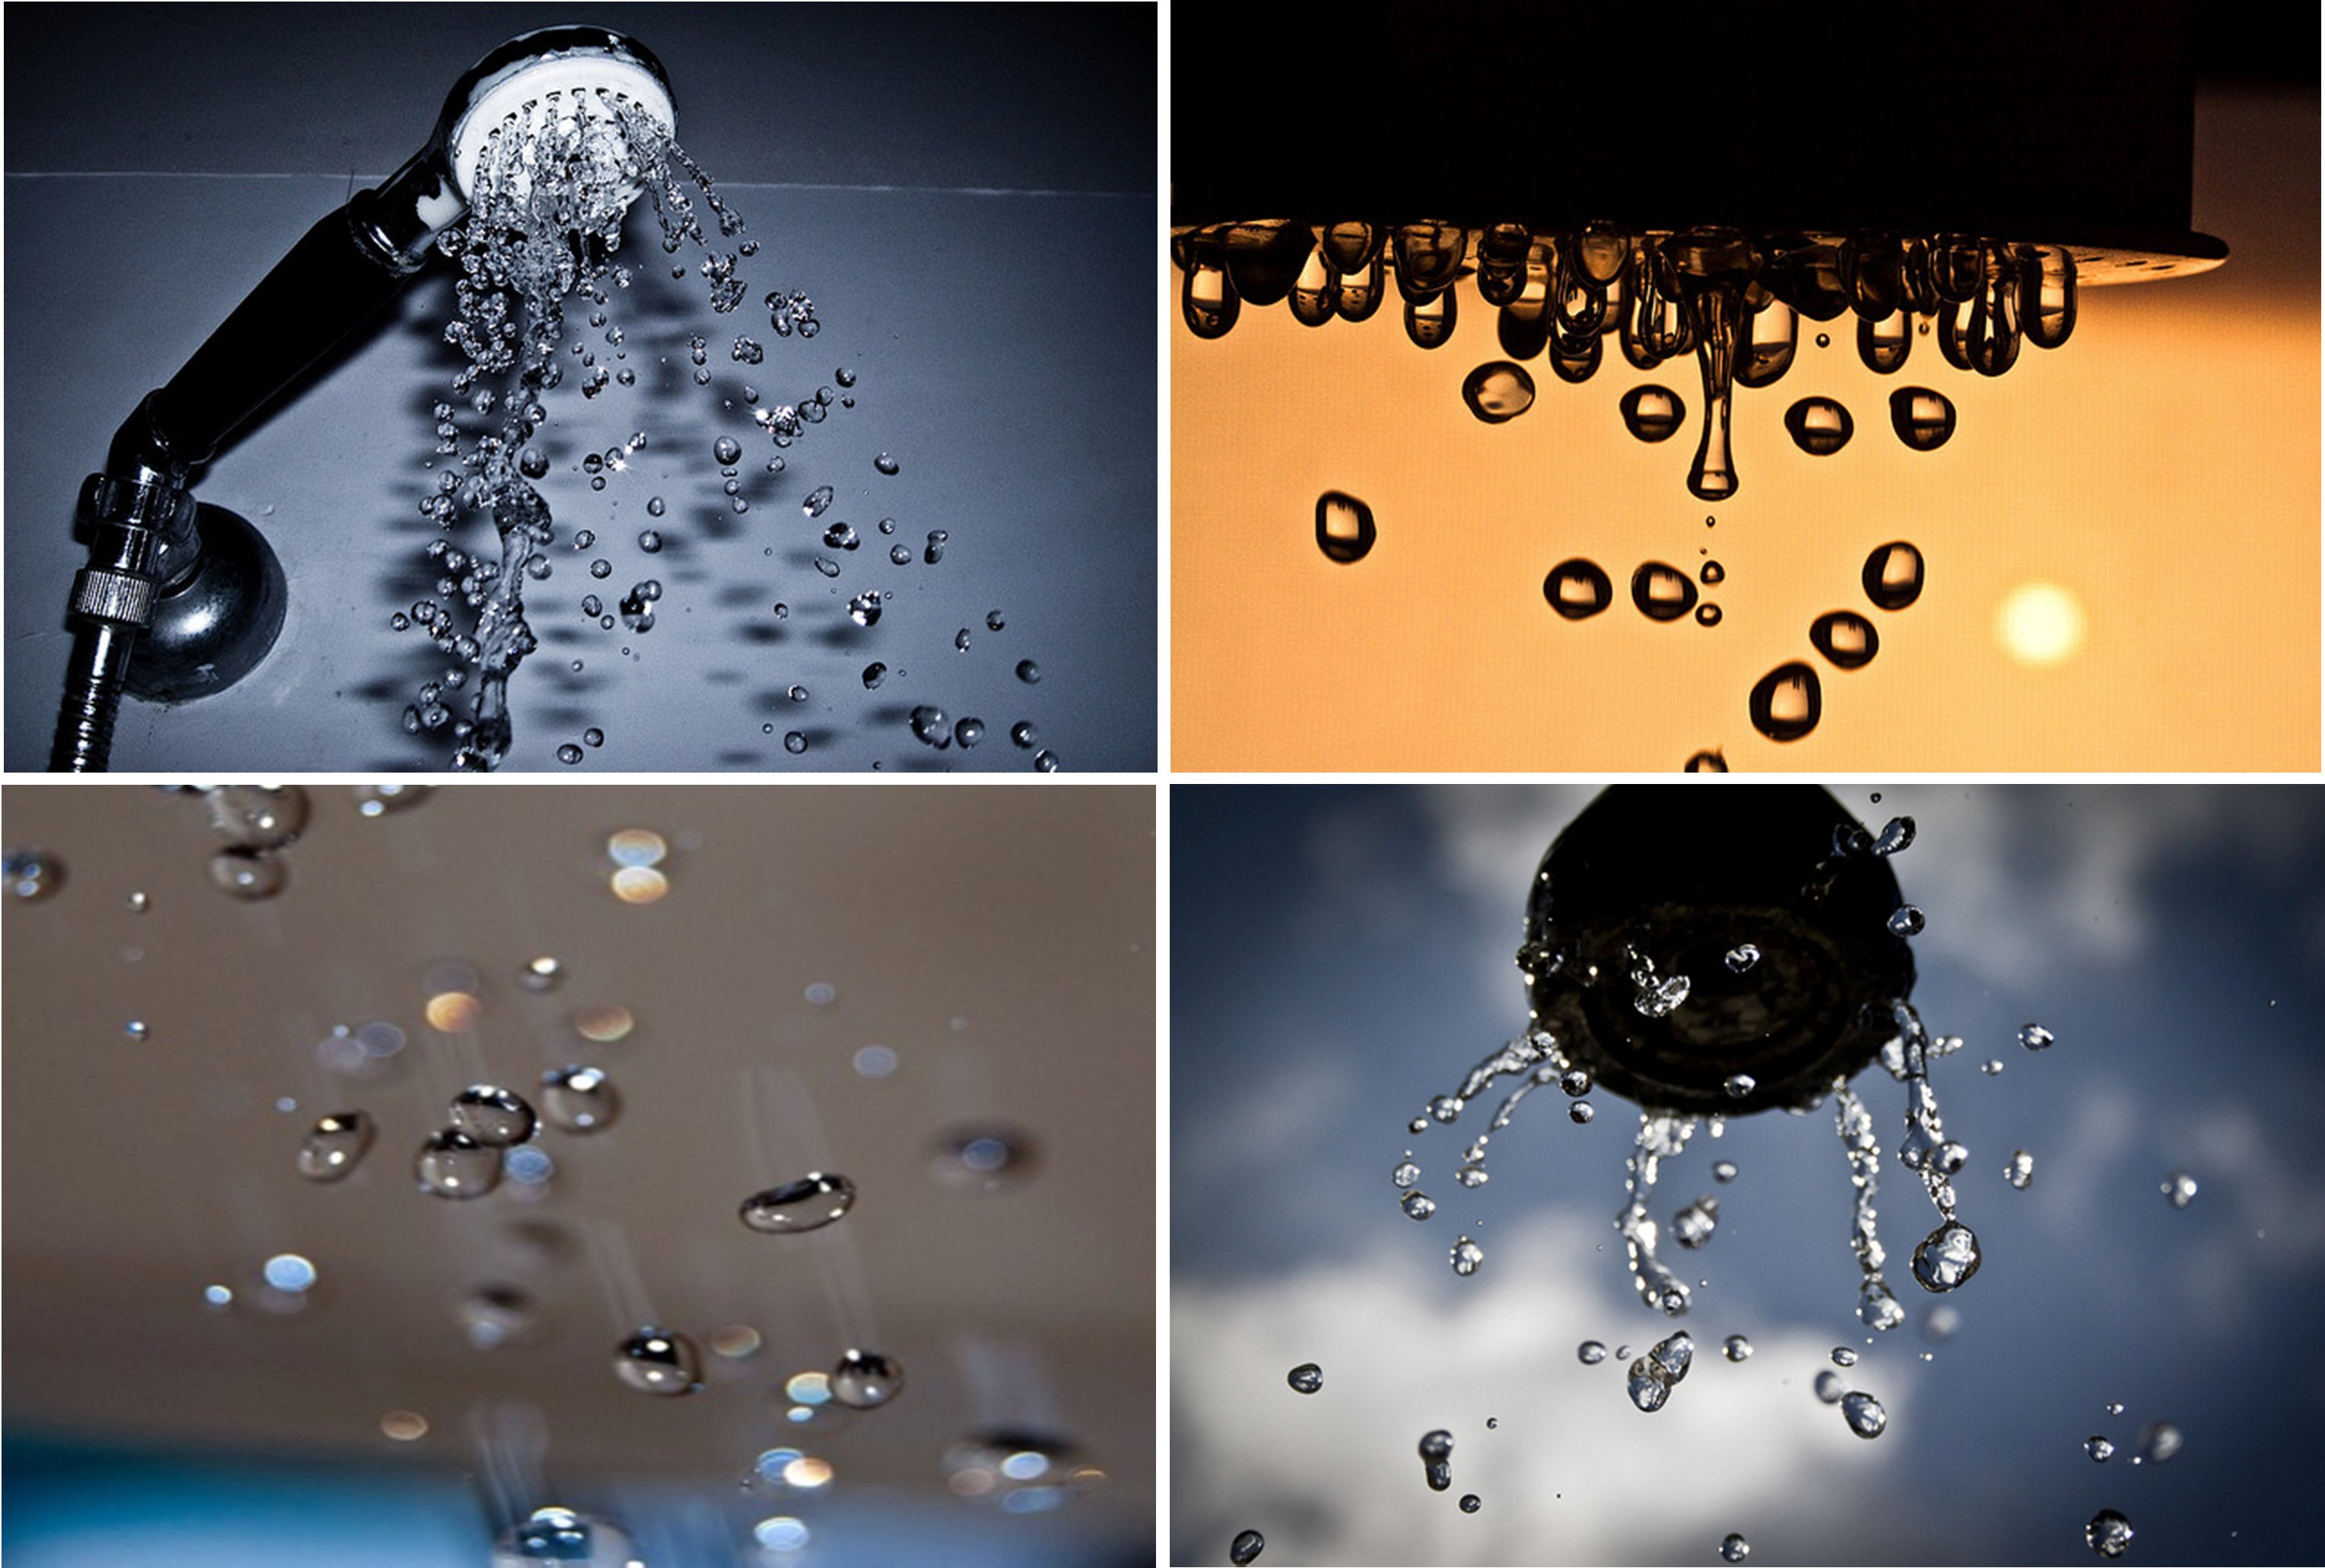 «Капли воды замерли в воздухе, каждая капля была чётко различима, и я видел их форму, деформированную свободным падением». Фото: flickr.com